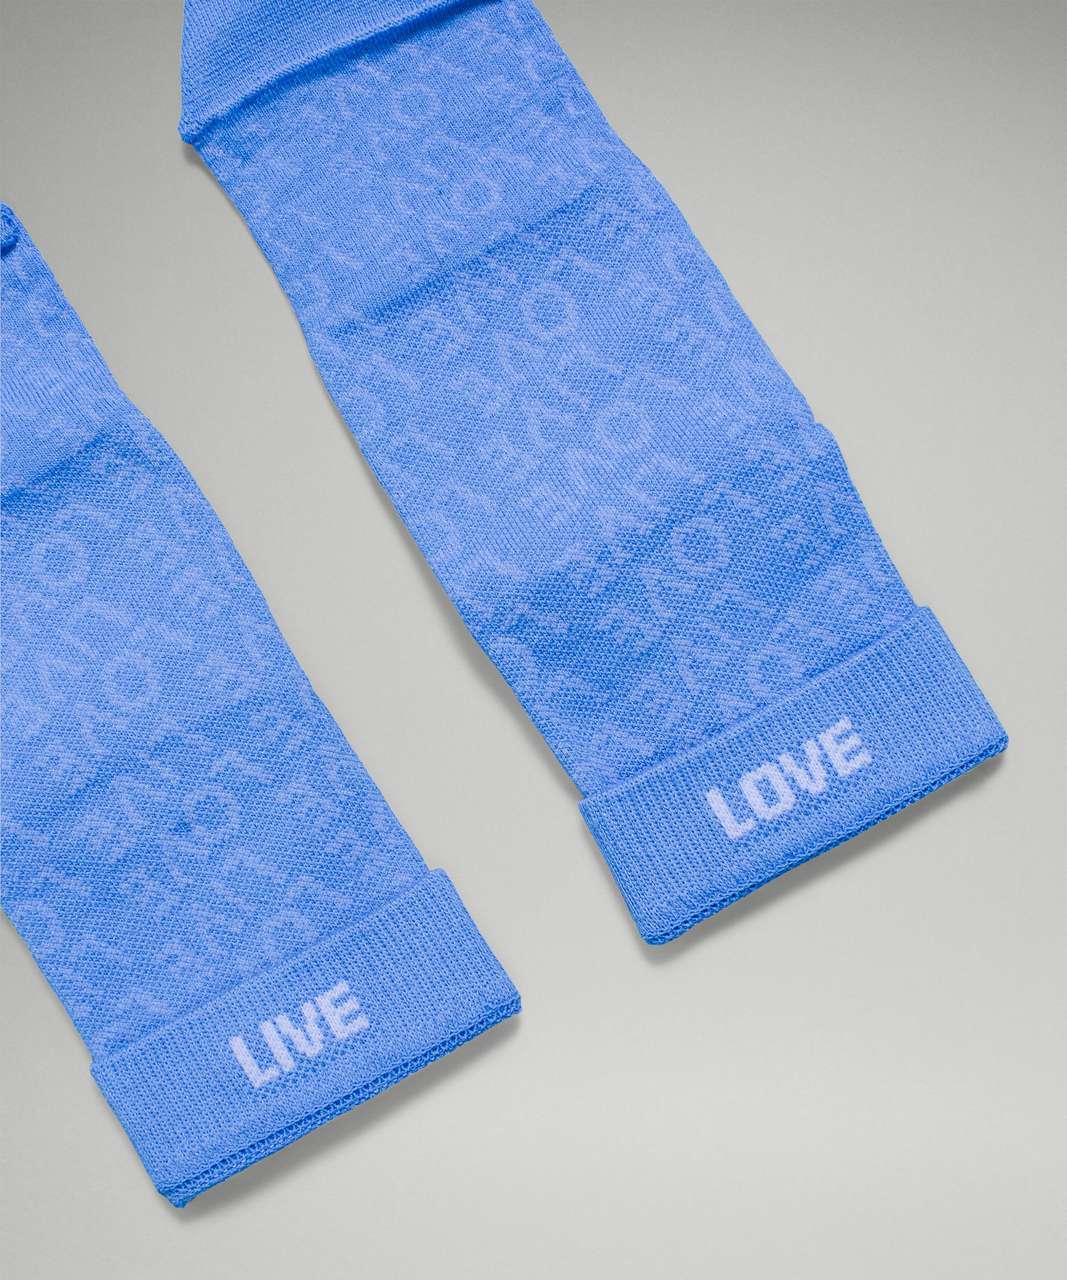 Lululemon Daily Stride Mid-Crew Sock 3 Pack - Blue Nile / Multi / Blue Linen